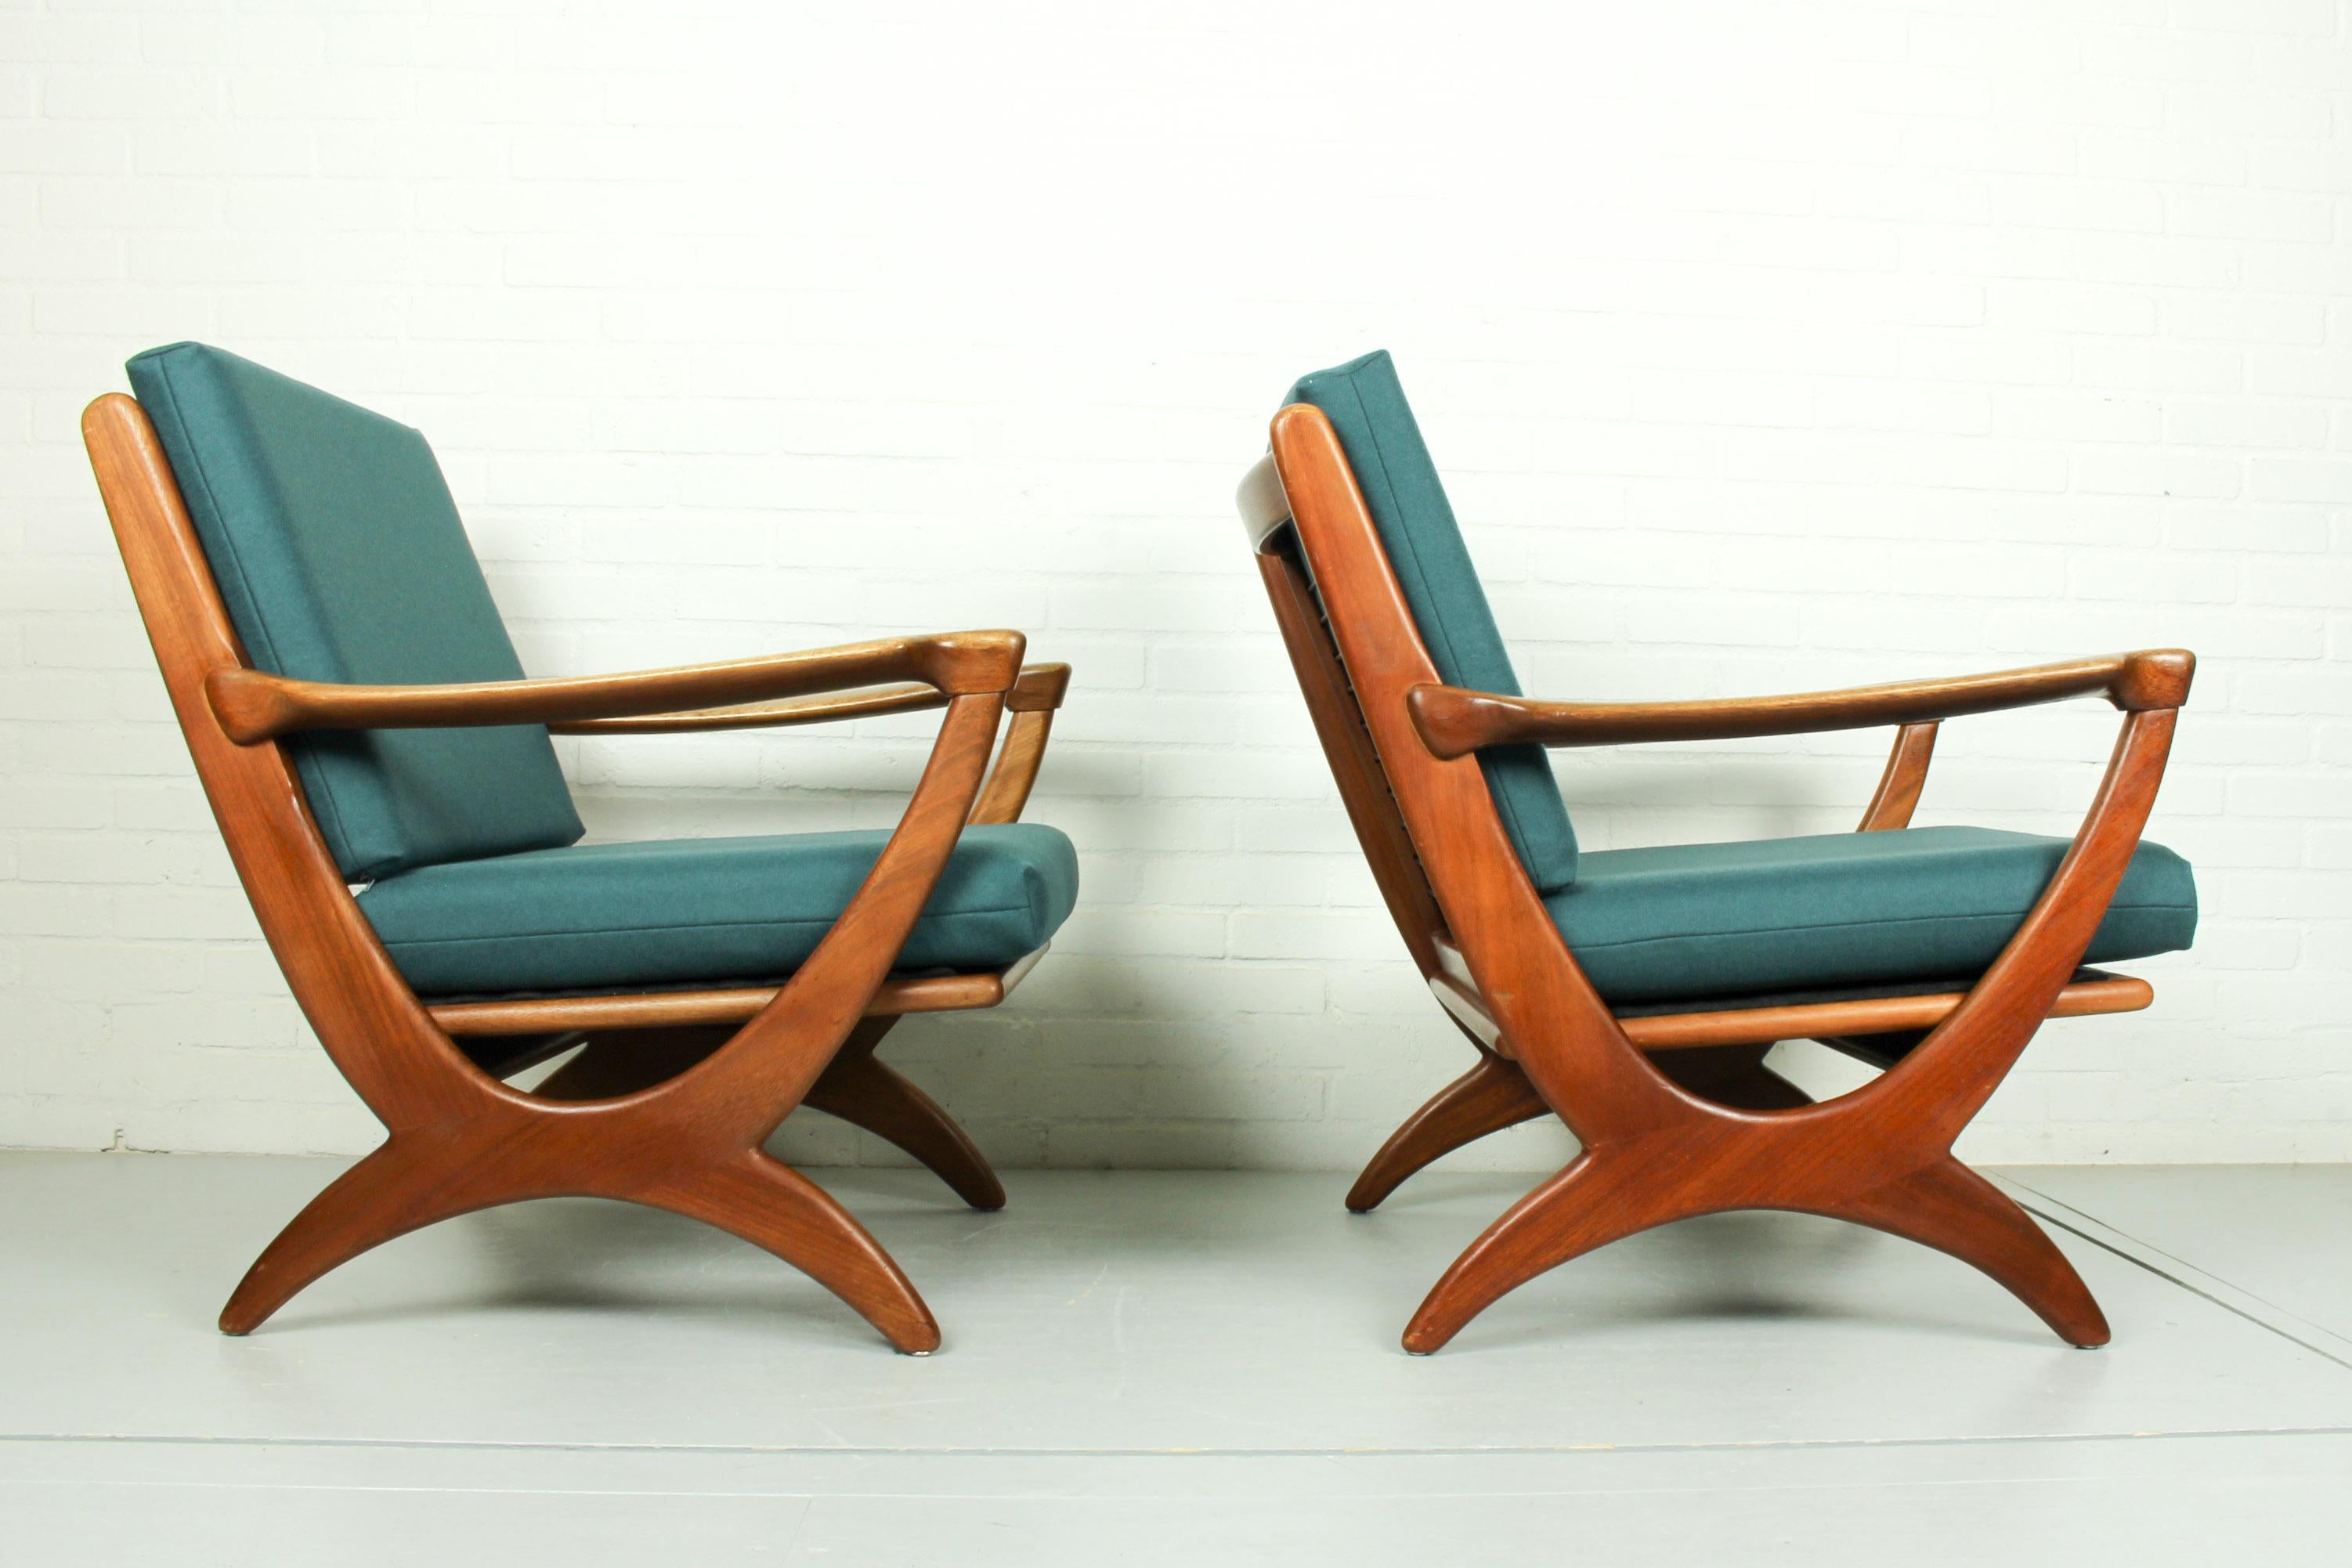 Vintage de Ster Gelderland set of 2 lounge chairs with teak frame in organic design and elegant armrests. New wool felt upholstery in petrol blue.